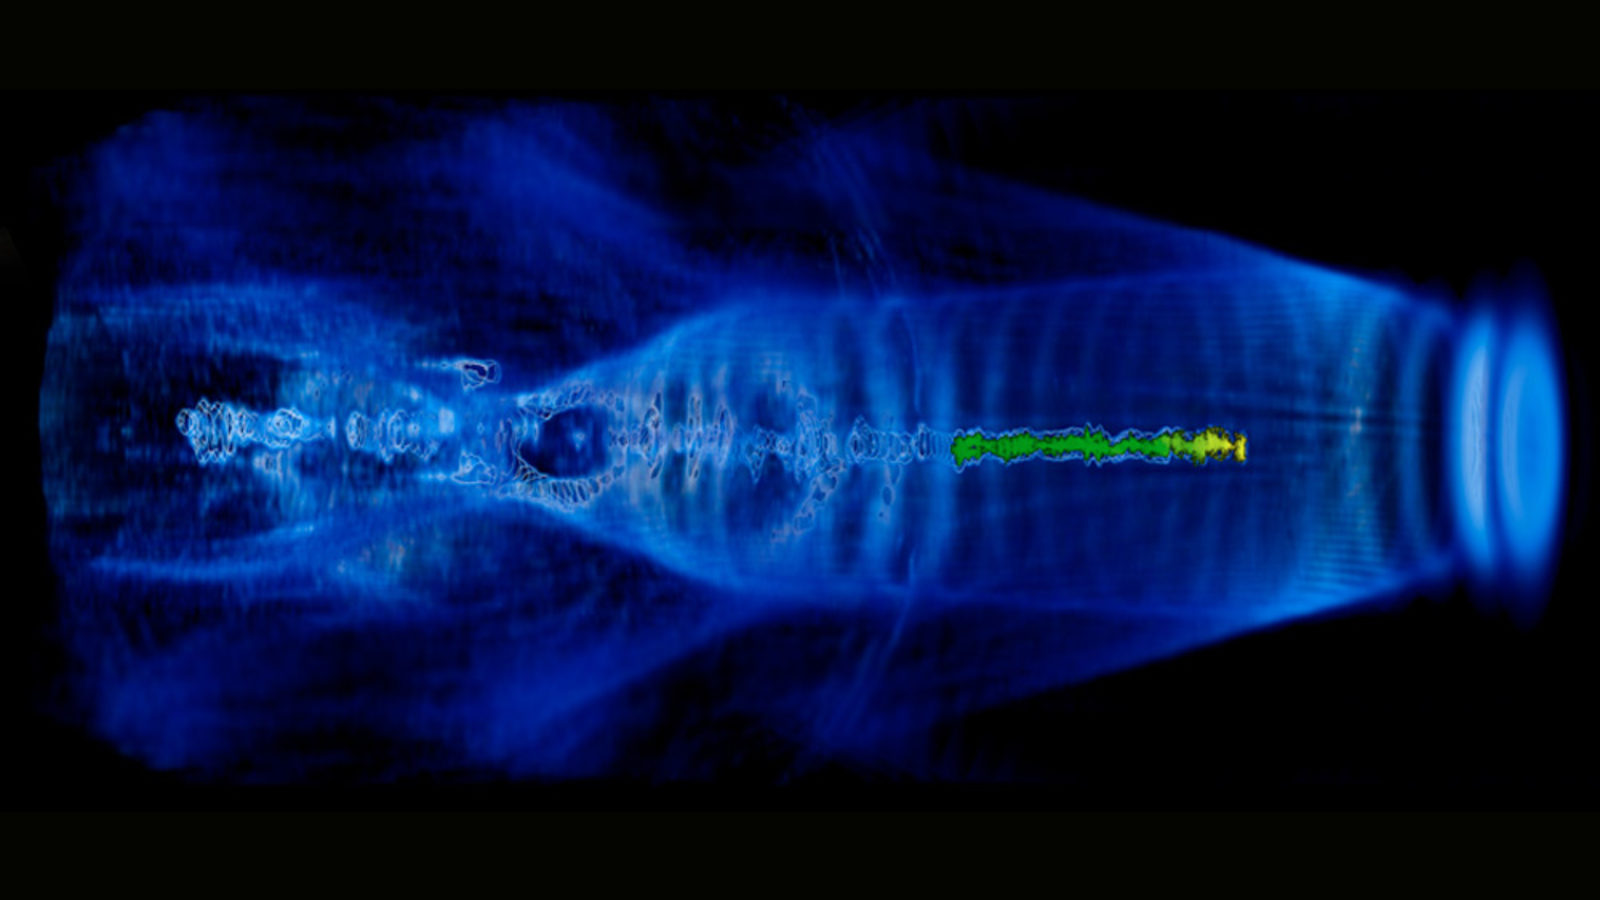 Image of plasma acceleration simulation